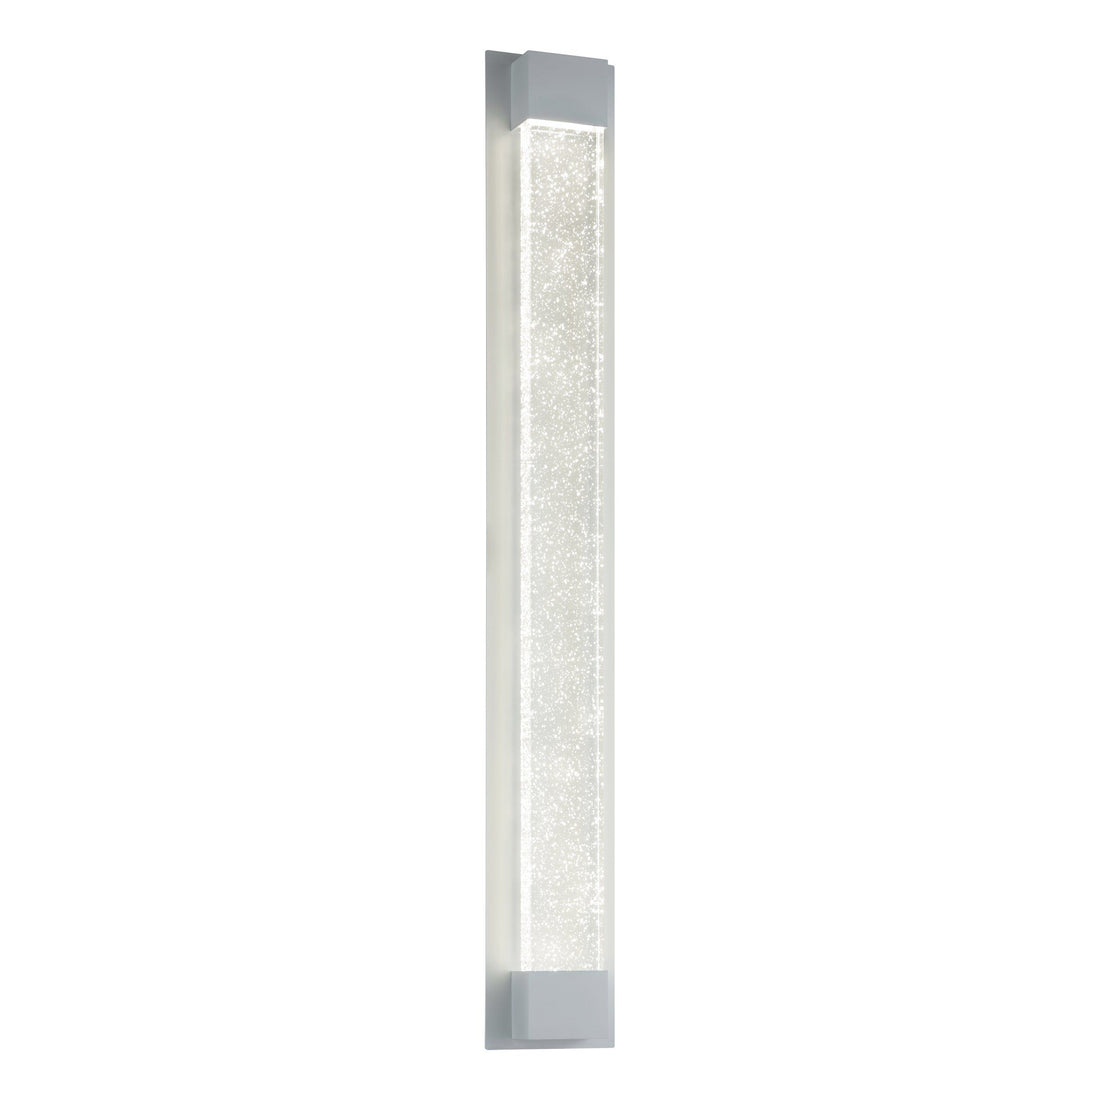 Villagrazia 90cm White LED Tri-Colour Contemporary Outdoor Bubble Exterior